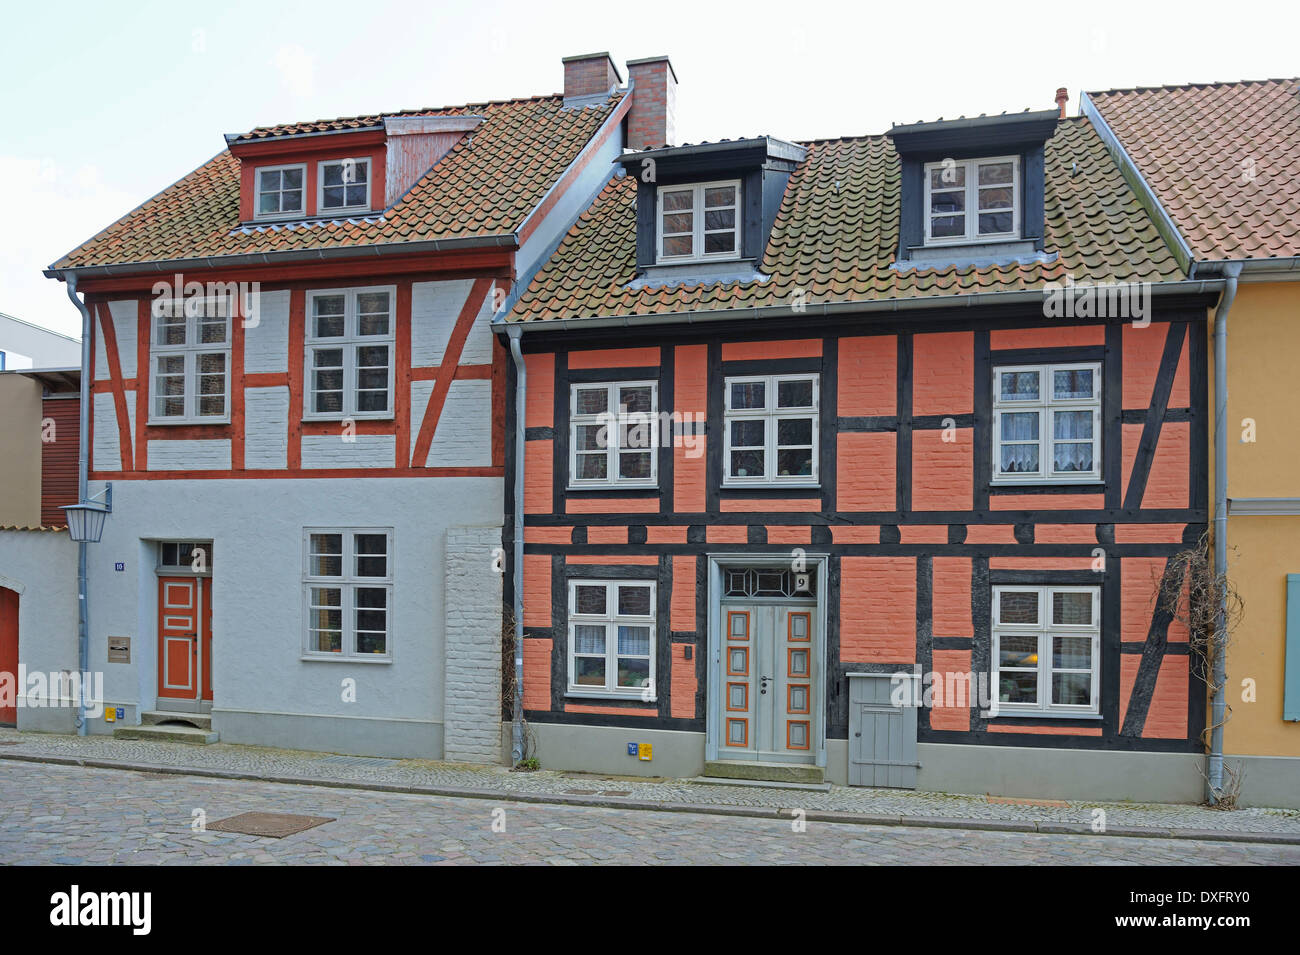 Rénové des maisons à colombage, centre ville historique, ville hanséatique de Stralsund, Mecklembourg-Poméranie-Occidentale, Allemagne Banque D'Images